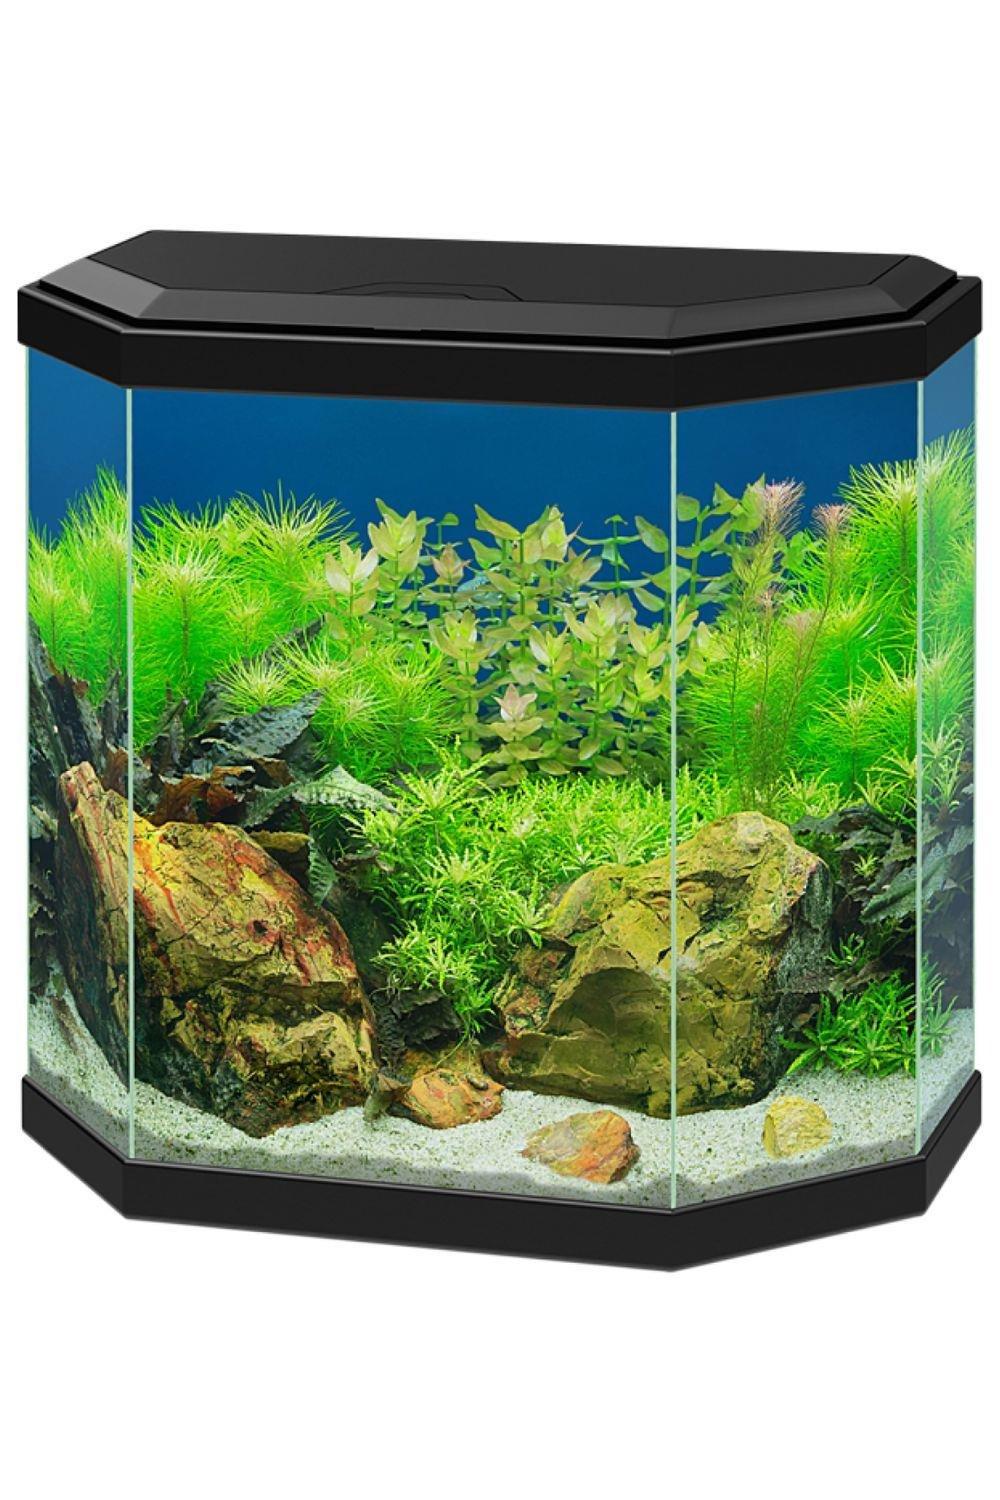 Aqua 30 Aquarium 25L Fish Tank with LED Light